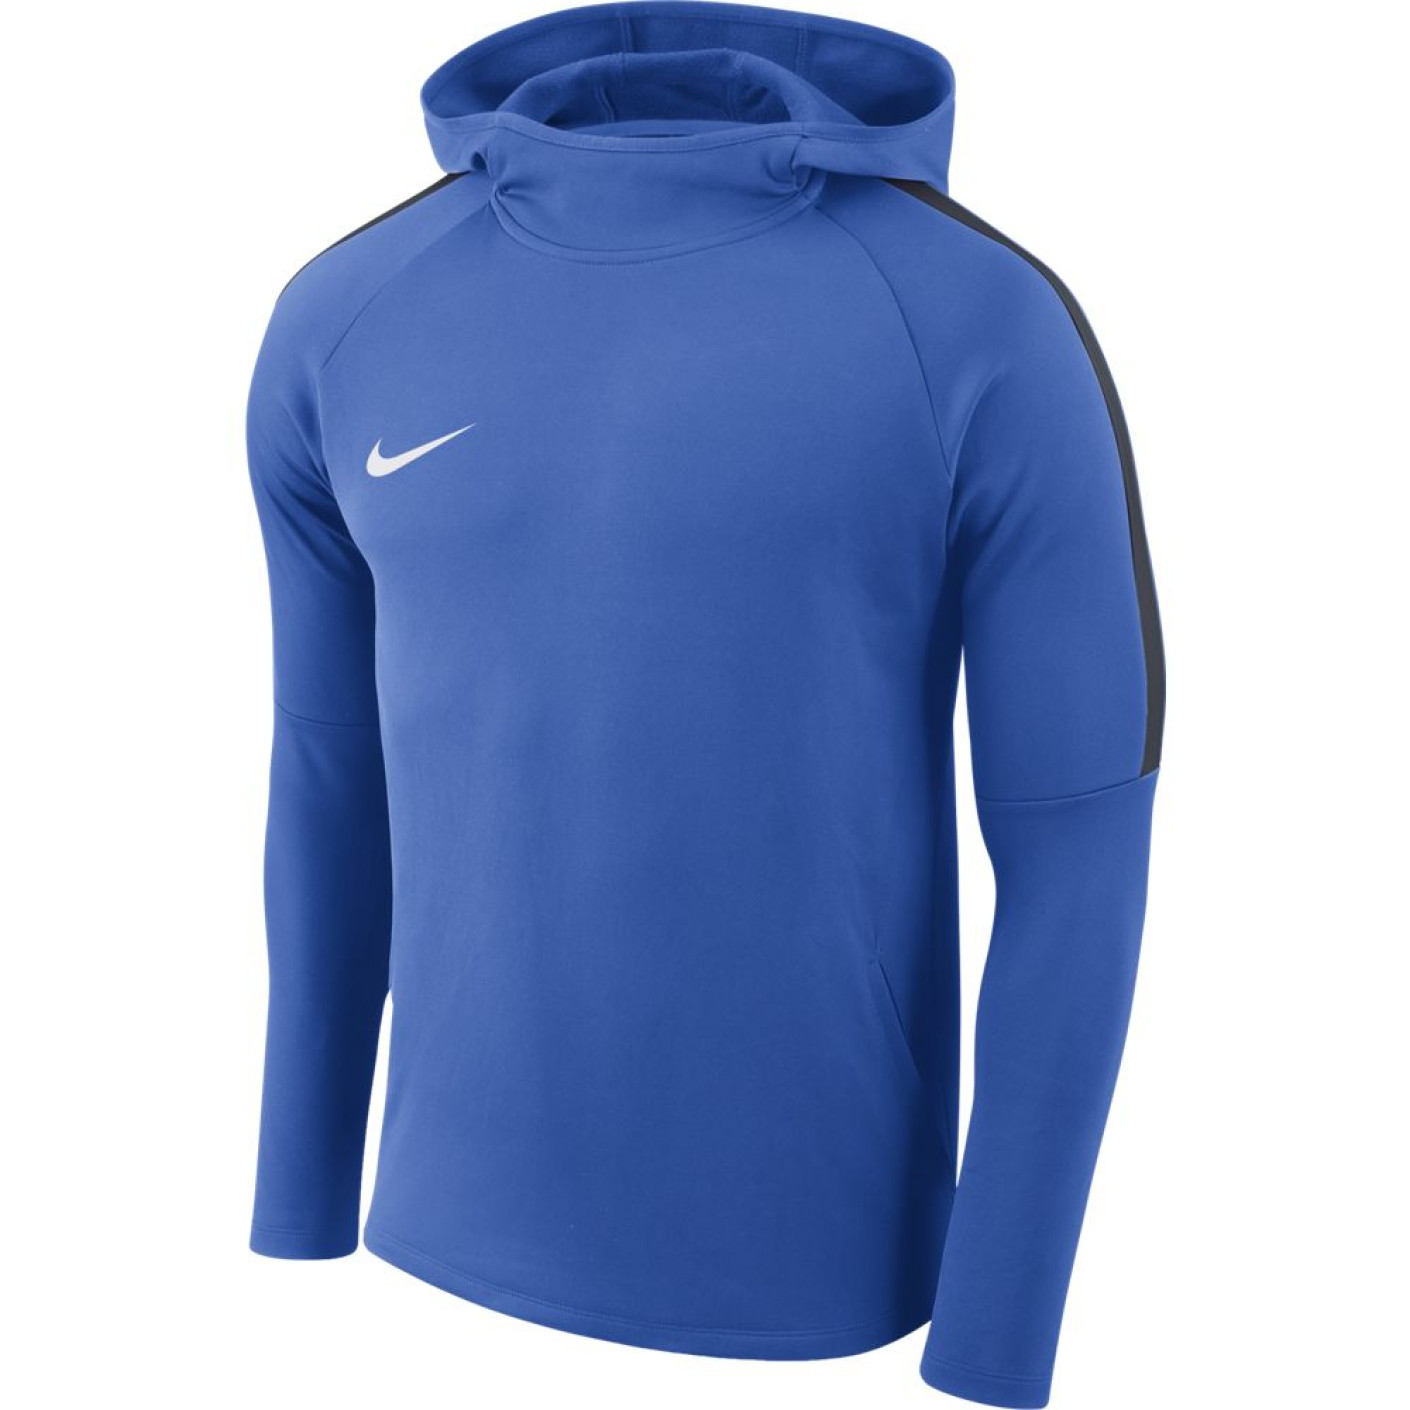 Nike Dry Academy 18 Hoodie Royal Blue